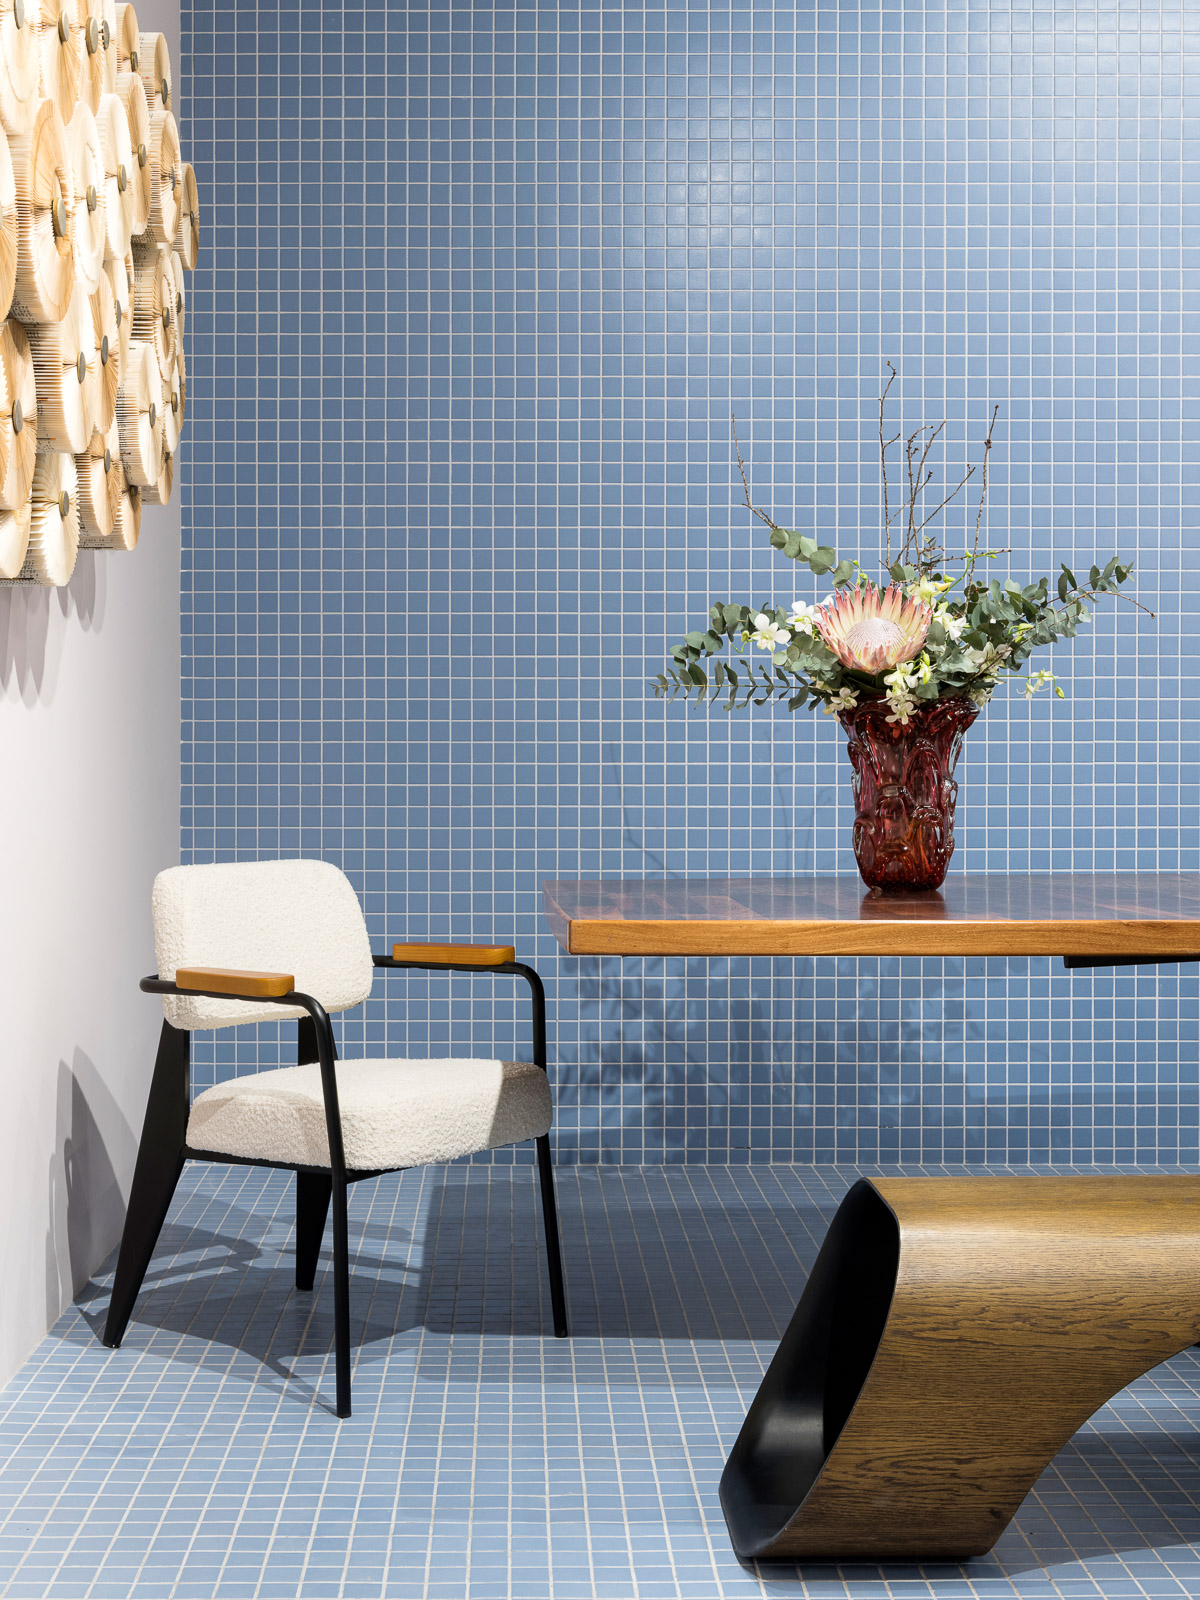 carlos navero arquitetura galeria pirajui casacor sp 2022 decoracao design arte mesa cadeira vaso